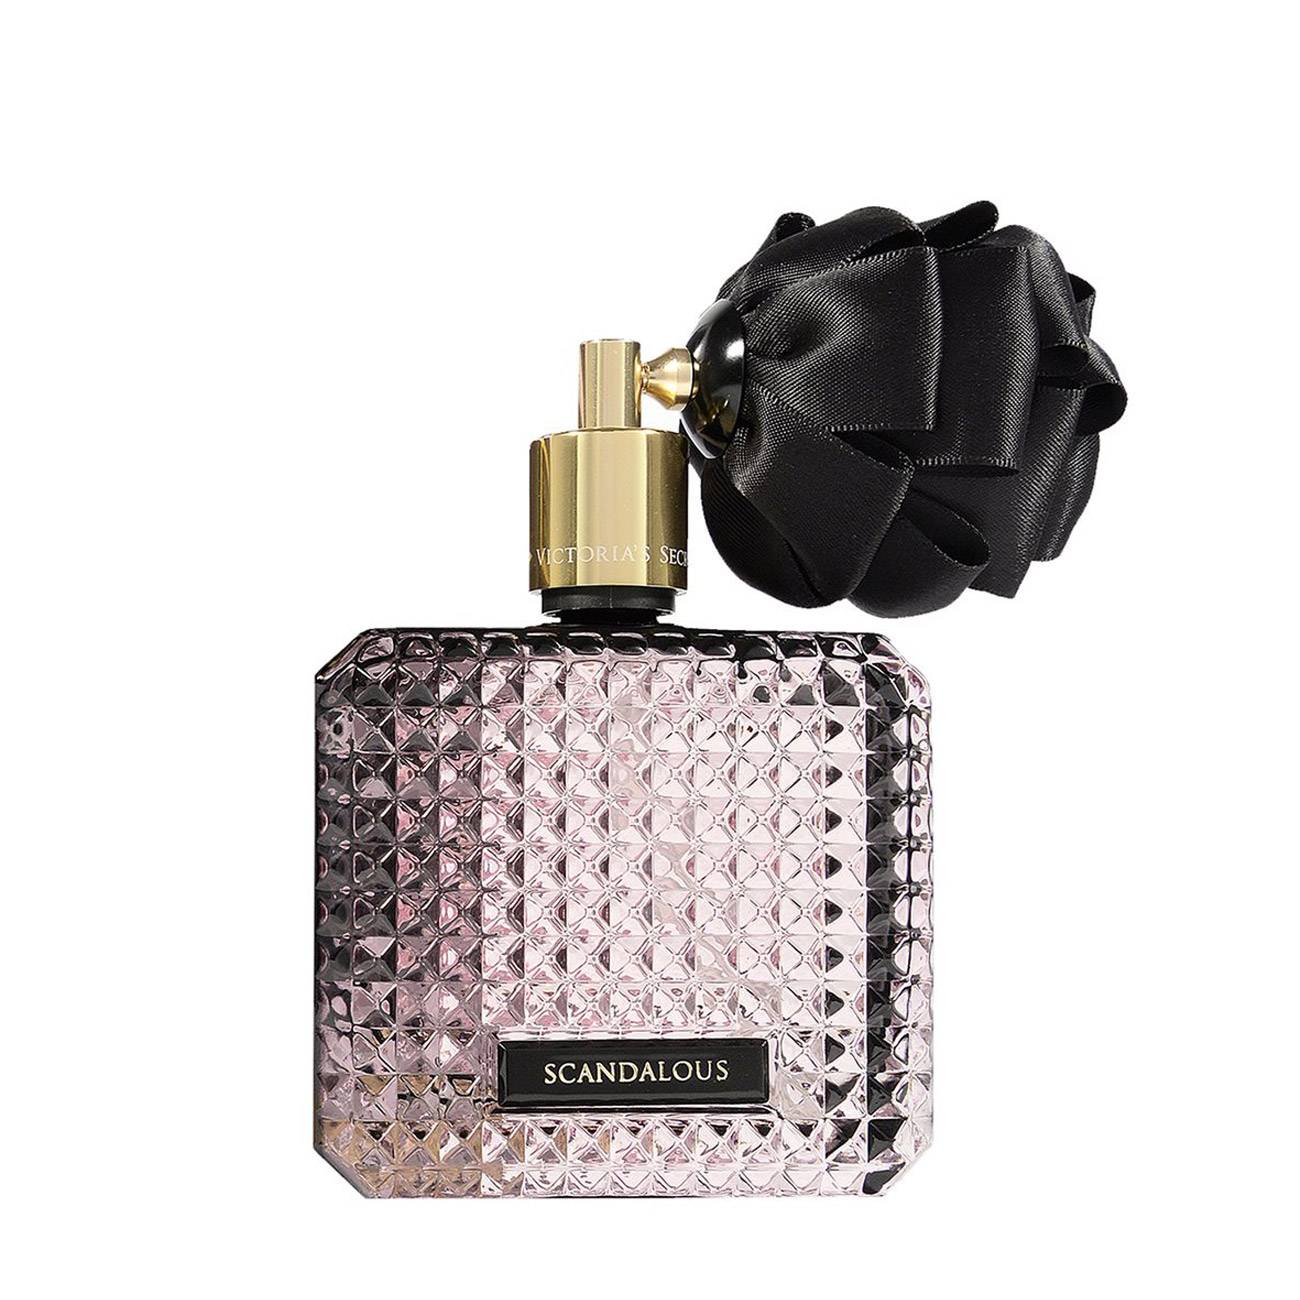 Apa de Parfum Victoria's Secret SCANDALOUS 100ml cu comanda online